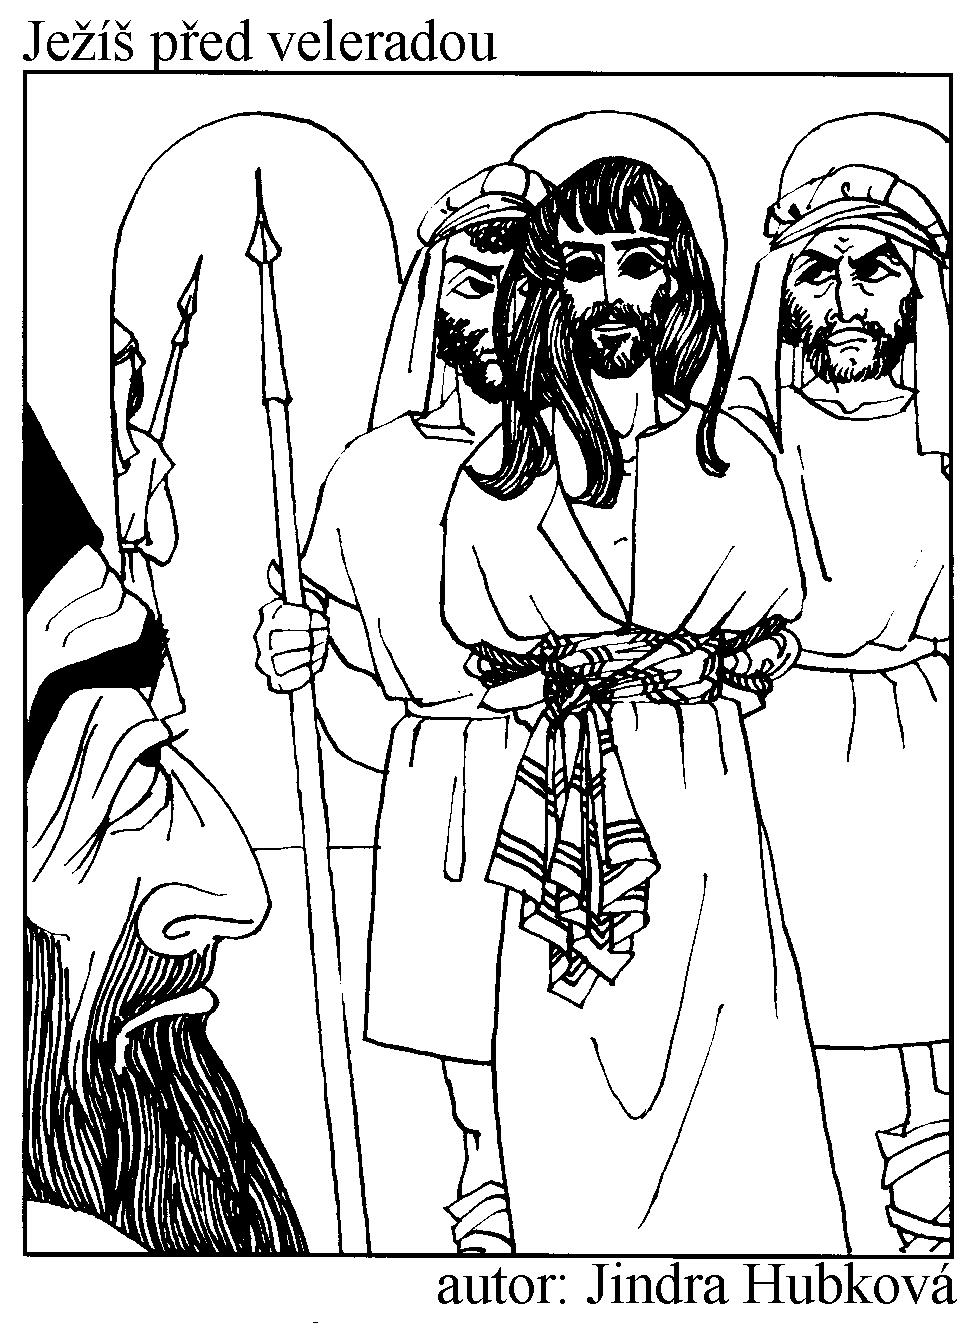 Ježíš před Pilátem